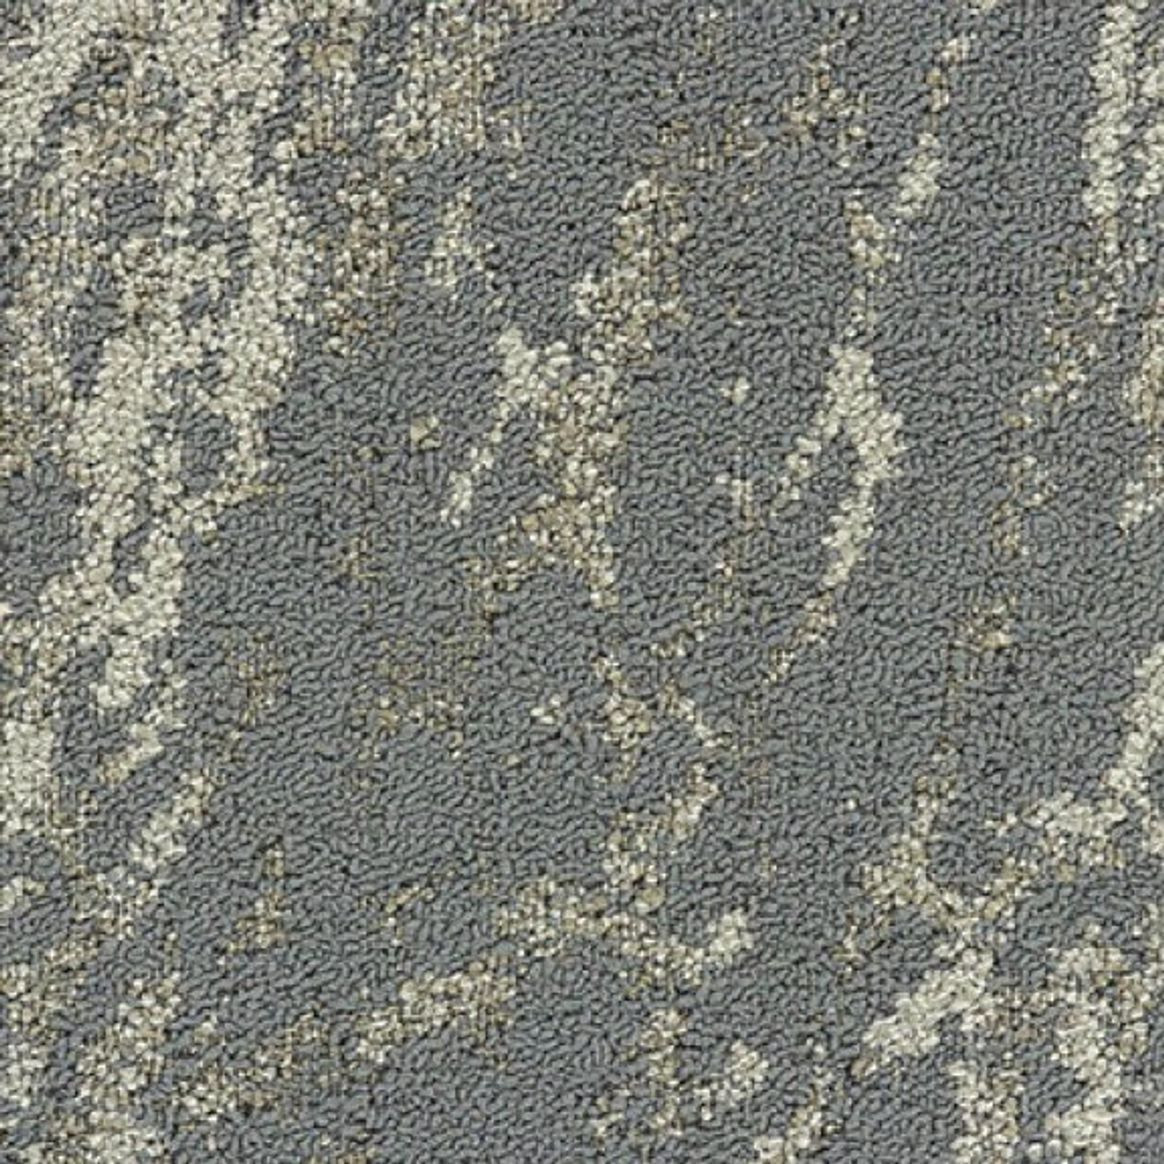 Mannington Commercial Arroyo Carpet Tile Sediment 12" x 48" Premium (72 sq ft/ctn)